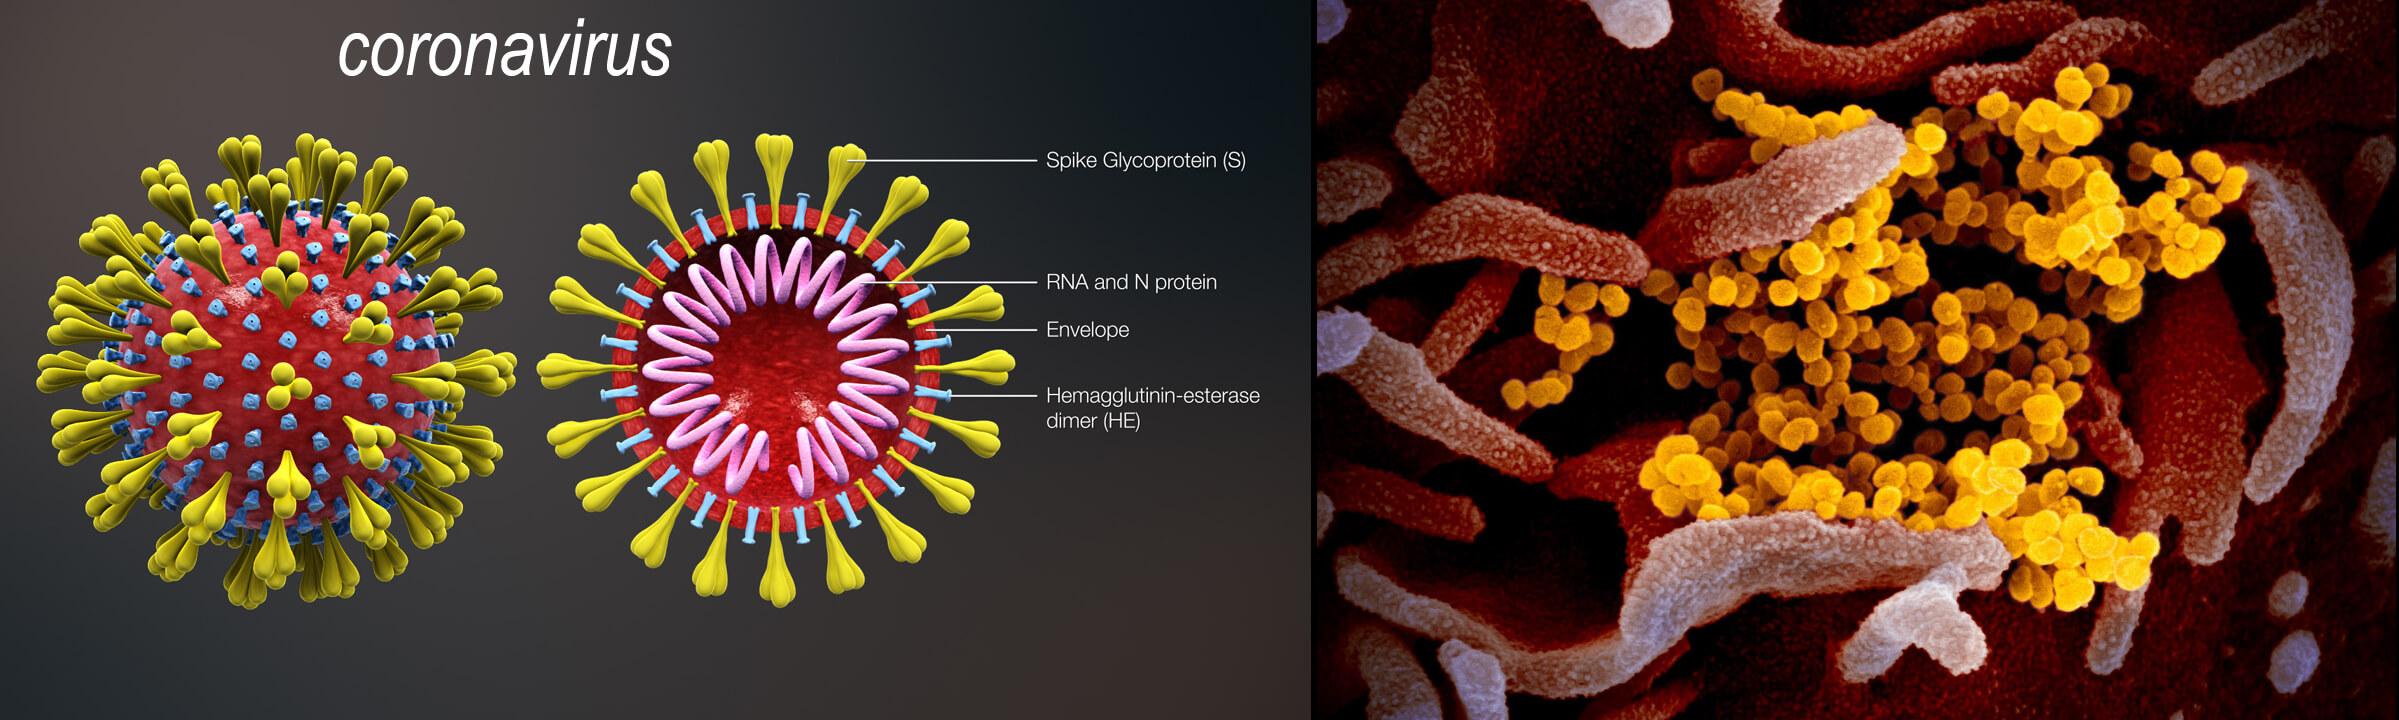 Hình 1: Cấu trúc của virus Corona và hình ảnh virus xâm nhiễm tế bào.